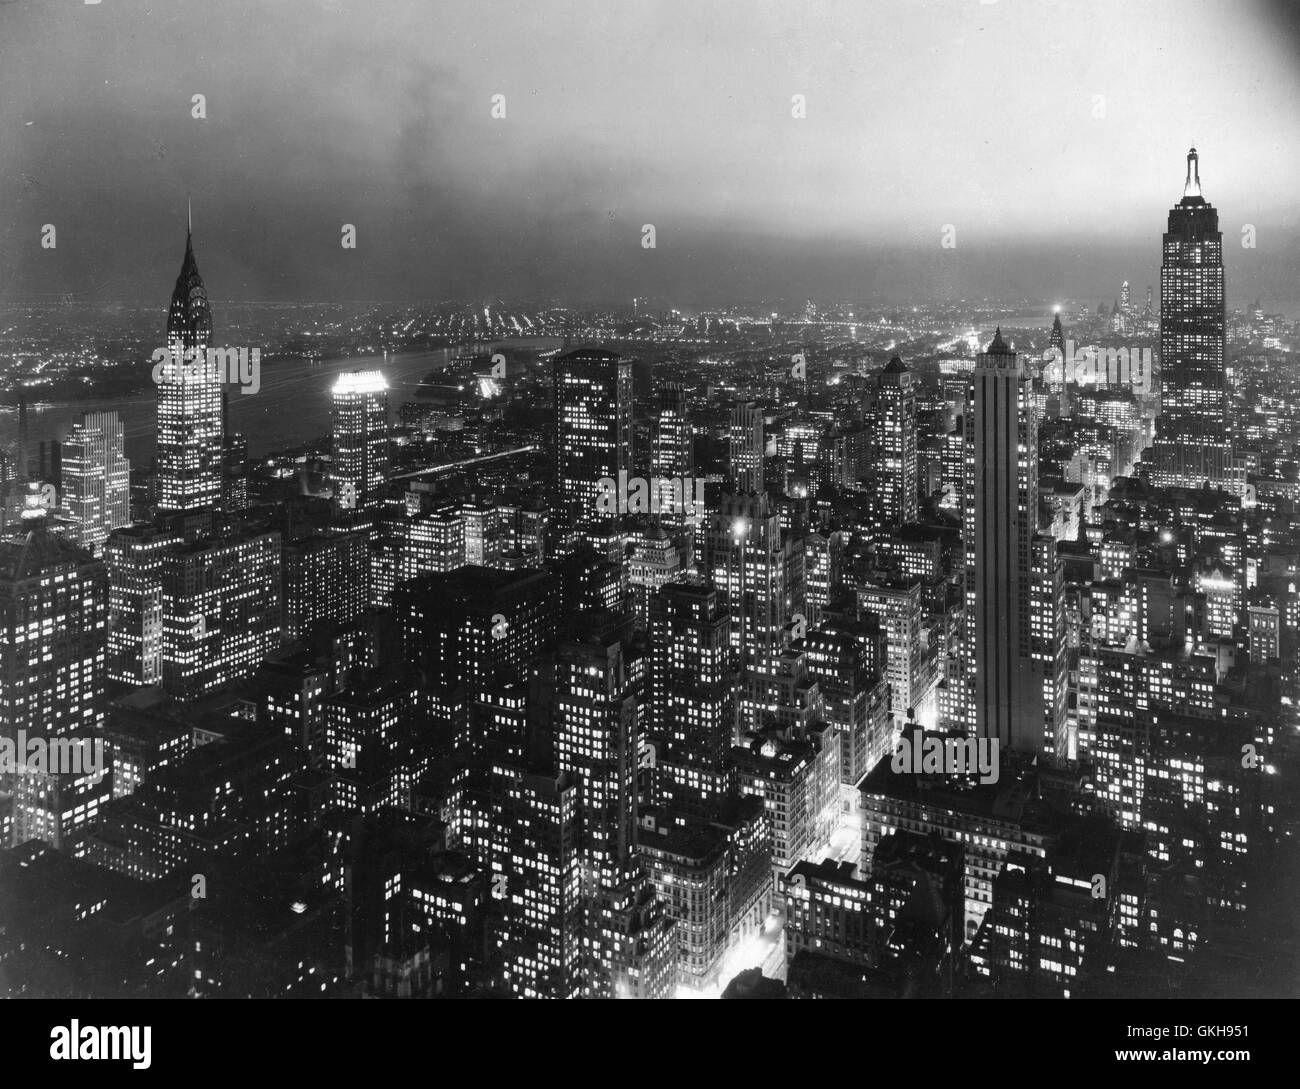 Nachtansicht des East Manhattan - Empire State Building auf der rechten Seite, Chrysler Building auf der linken Seite. Stockfoto